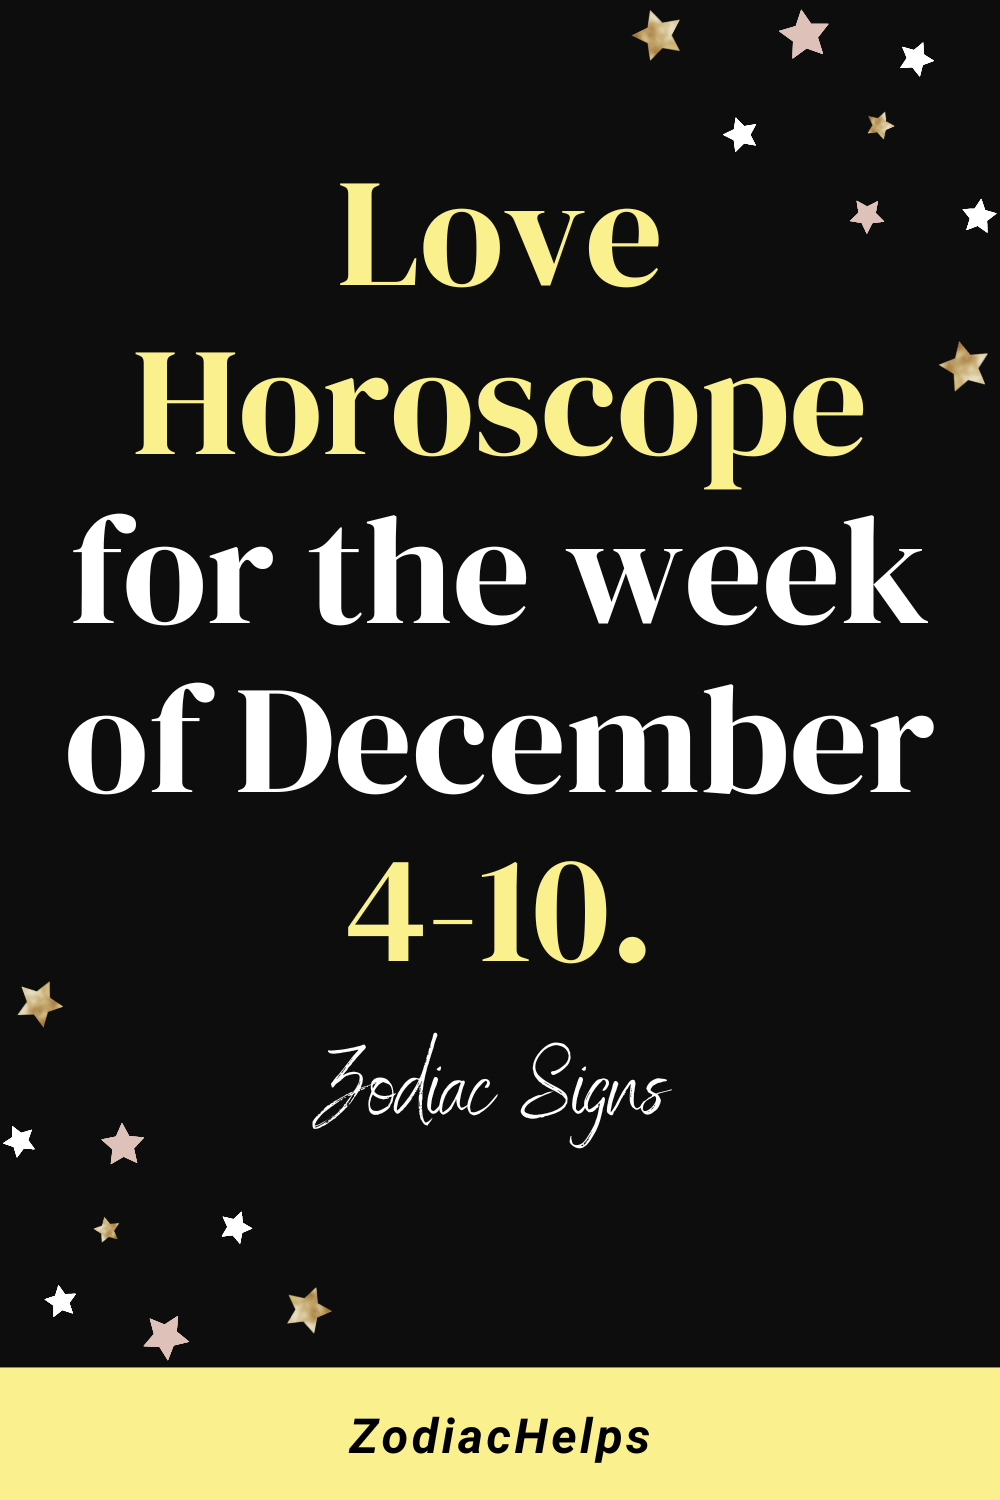 Love horoscope for the week of December 4-10.